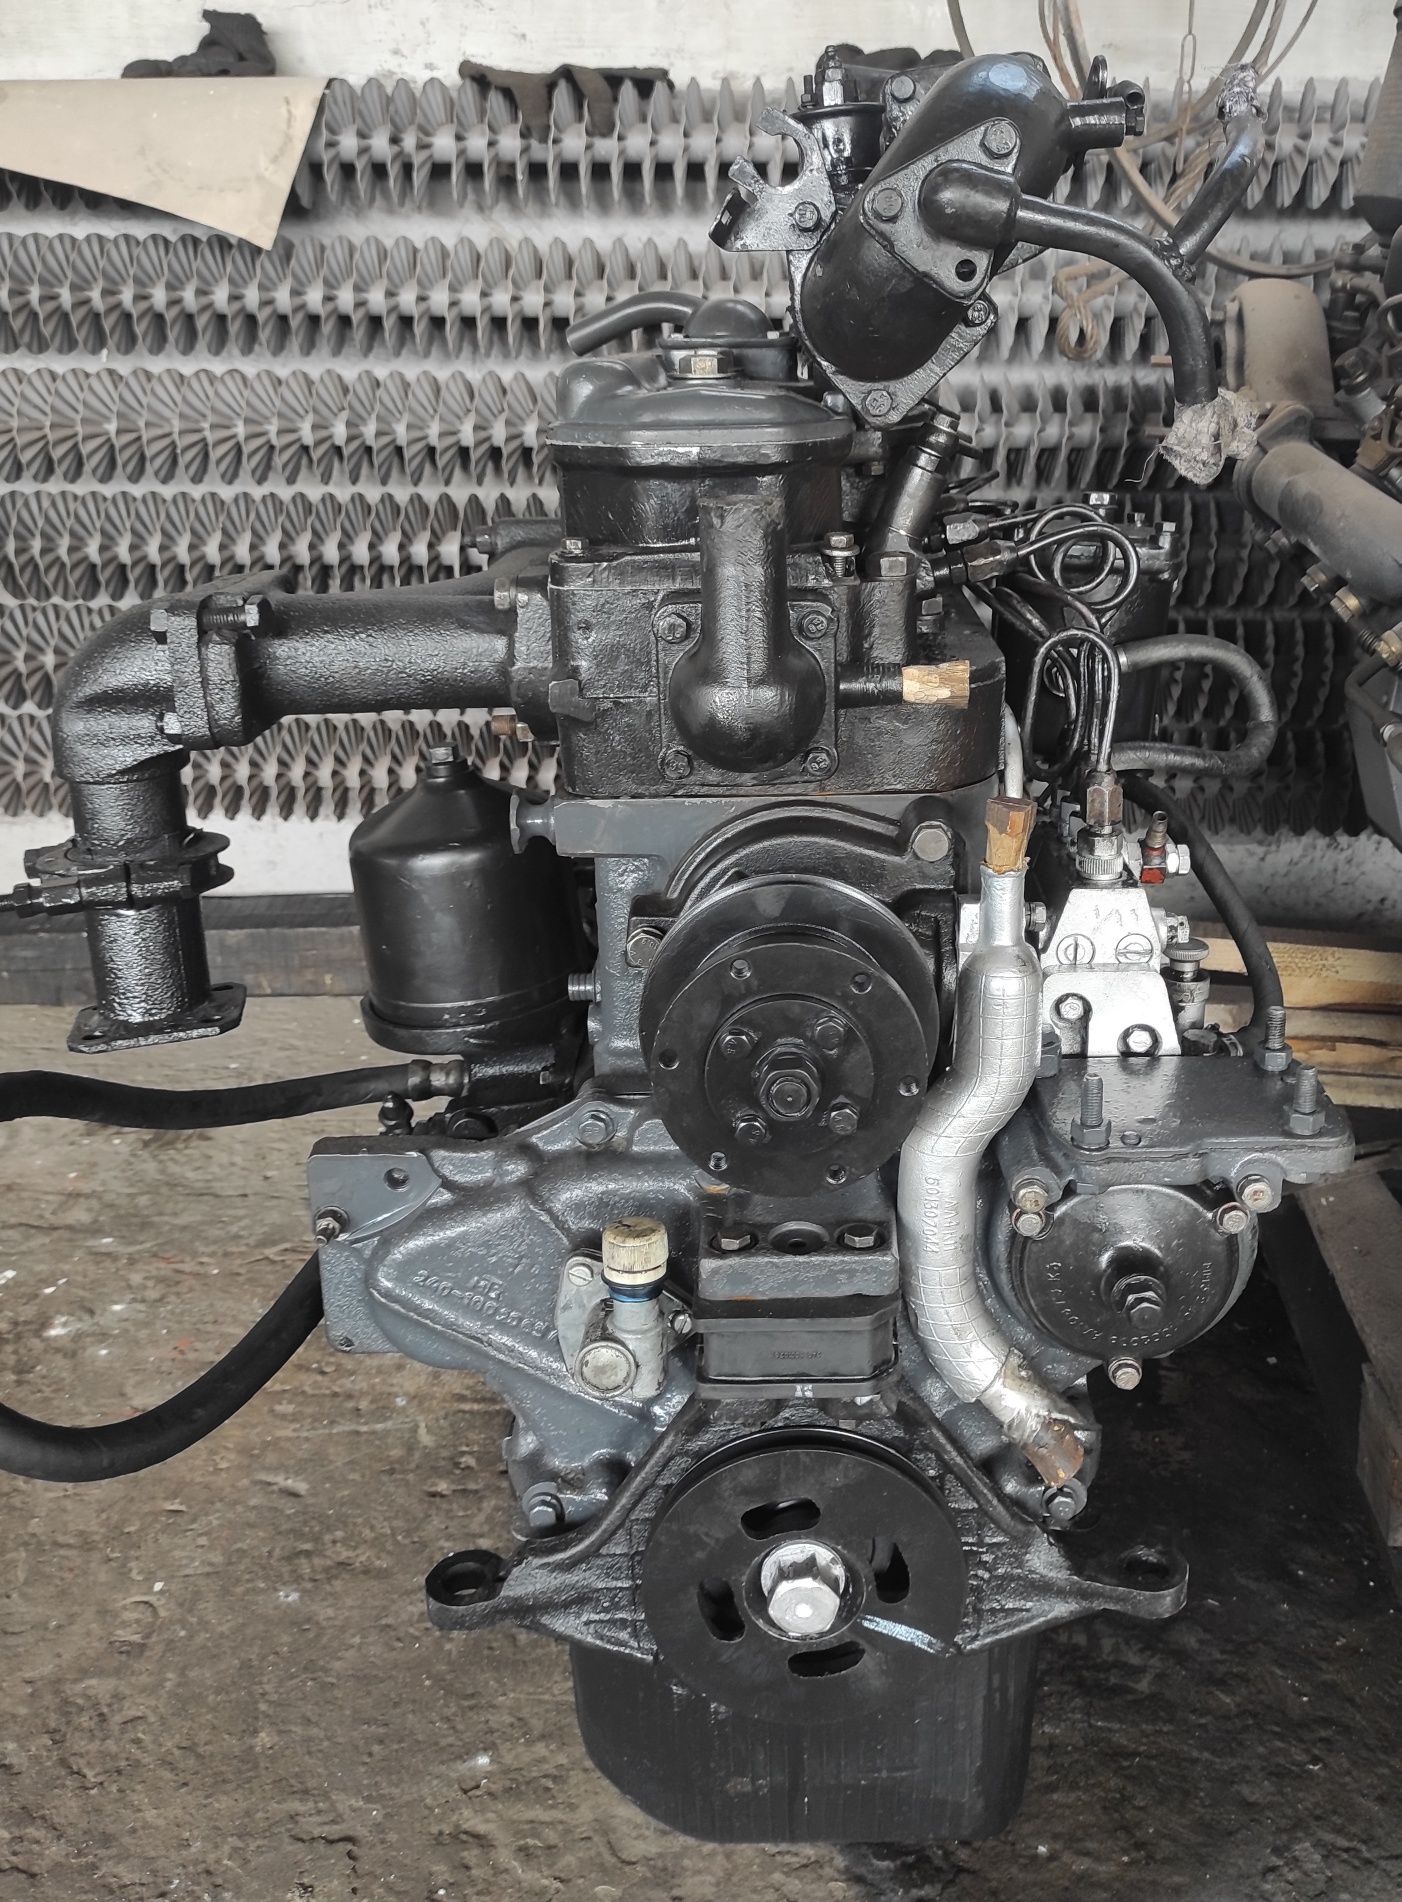 Мотор двигун ДВС МТЗ80 Д240 Б/У перебраний